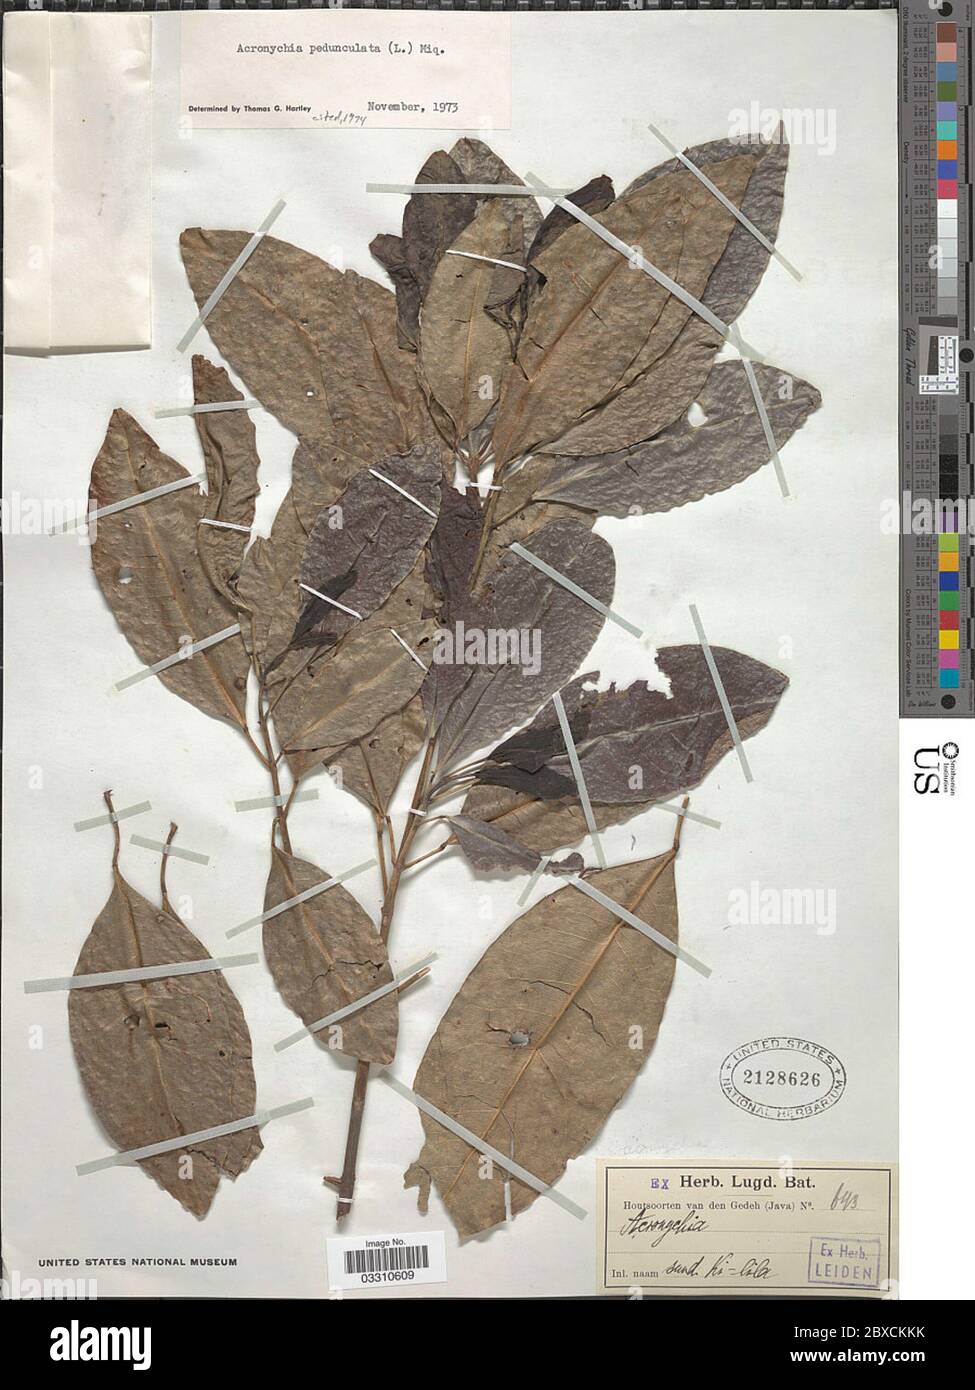 Acronychia pedunculata L Miq Acronychia pedunculata L Miq. Stock Photo